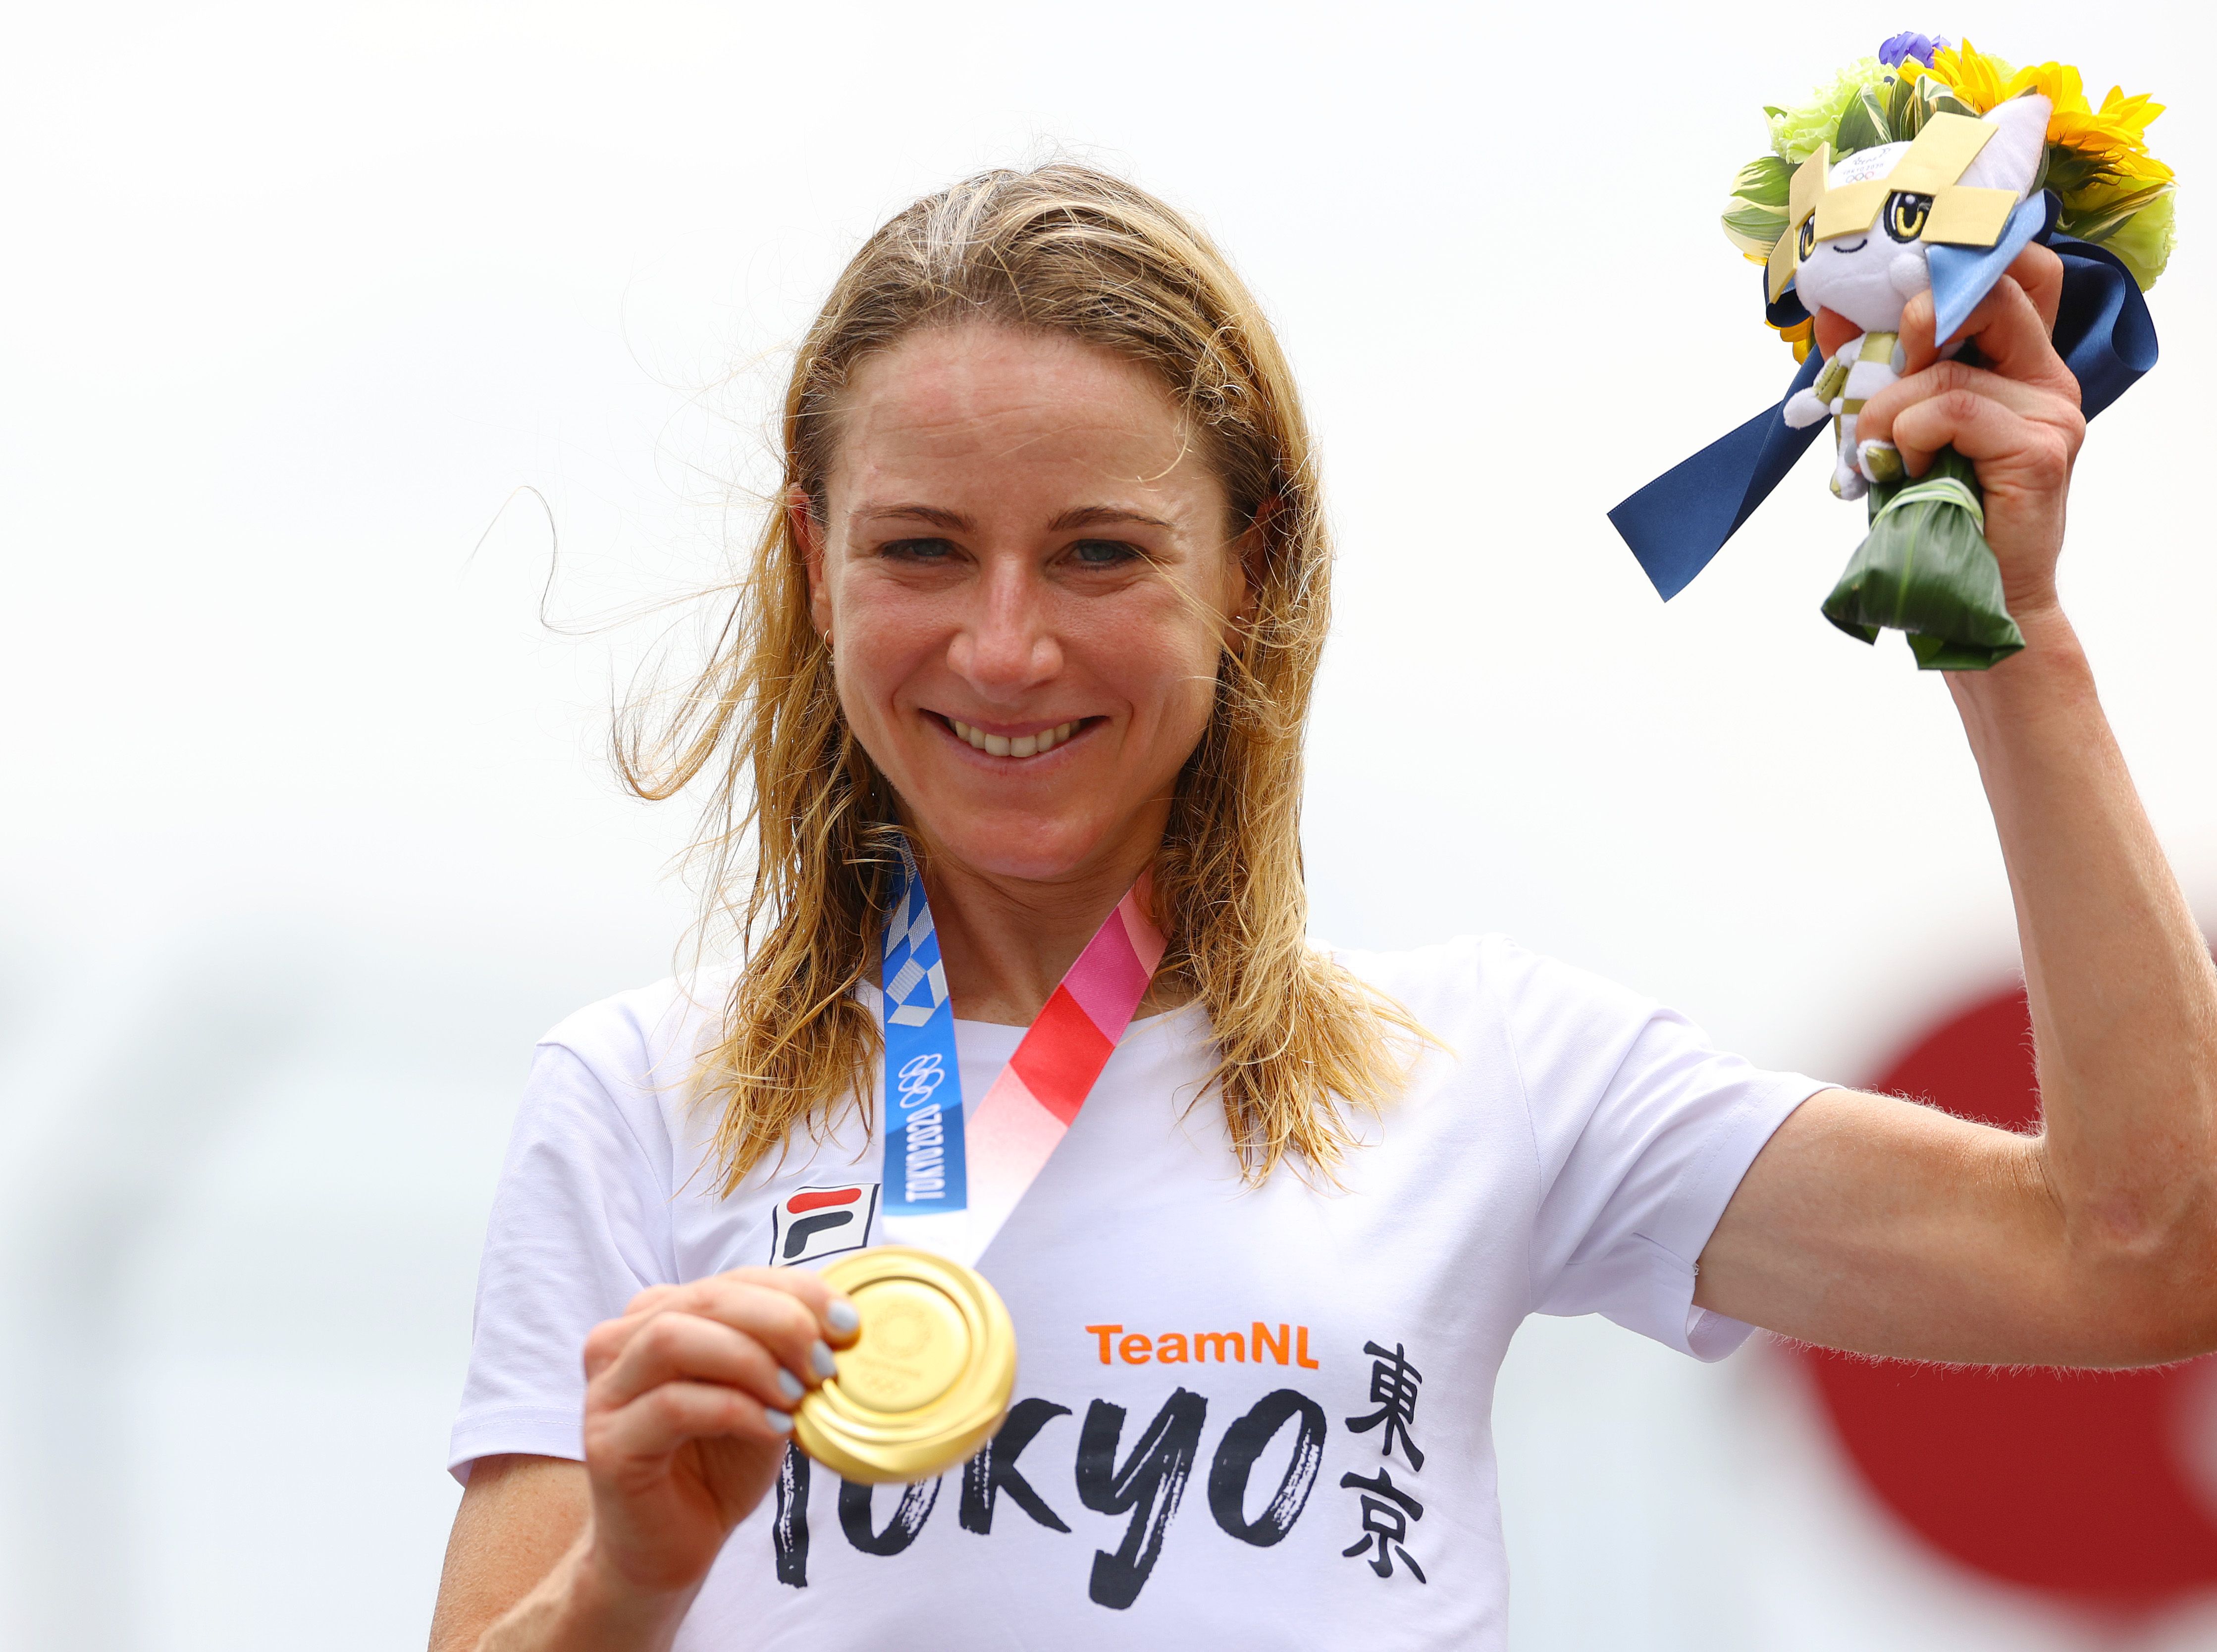 Dutch cyclist Annemiek van Vleuten